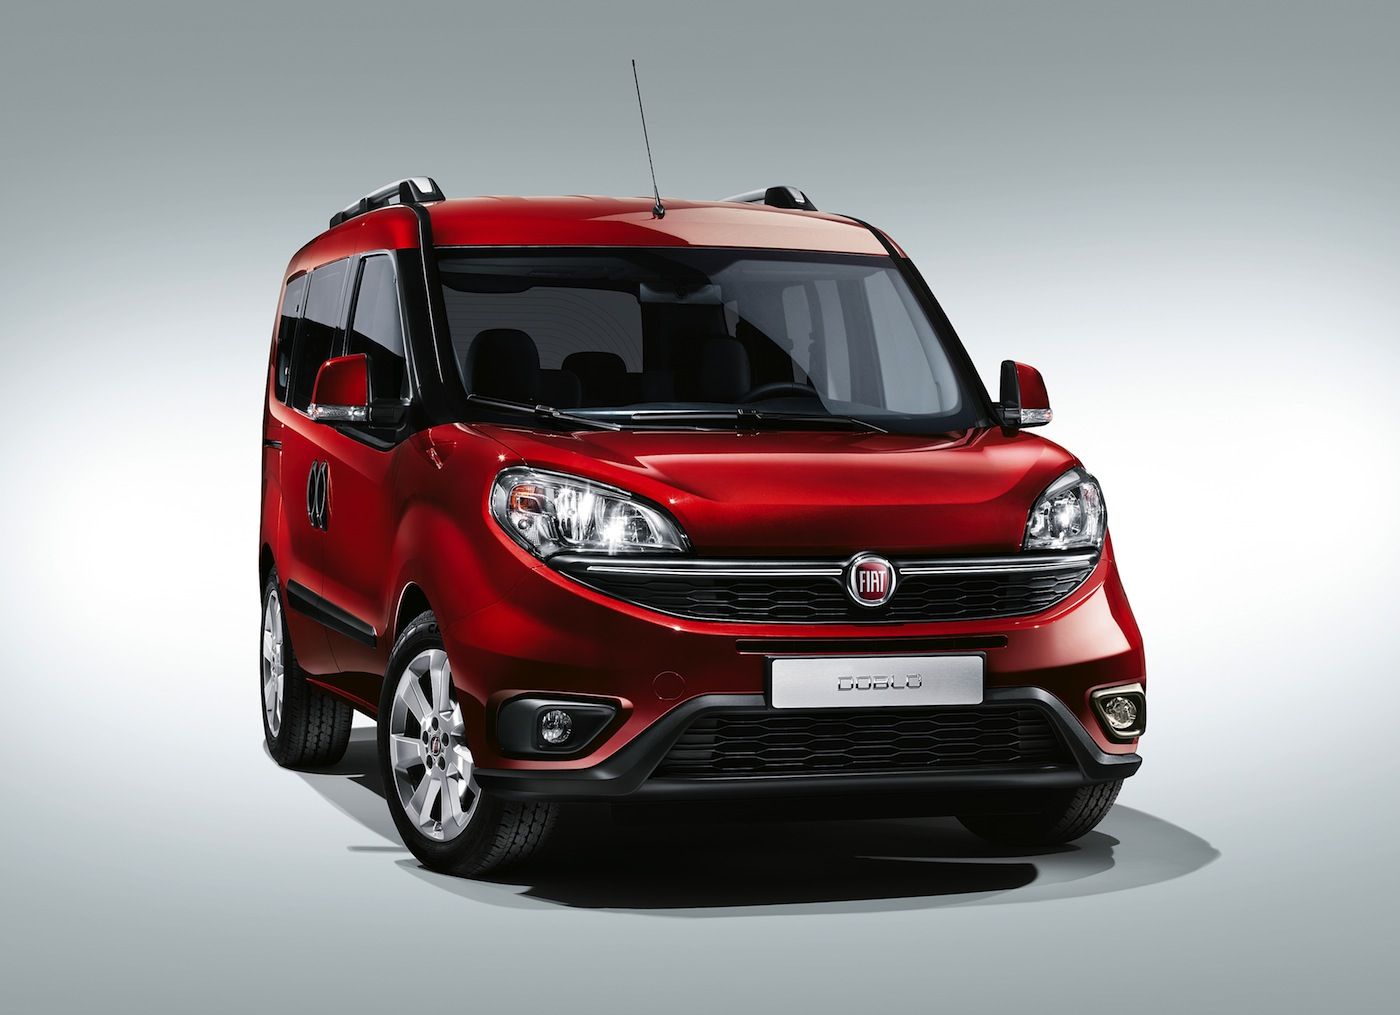 Nuevo Fiat Doblo estará disponible en España a partir de la primavera de 2015